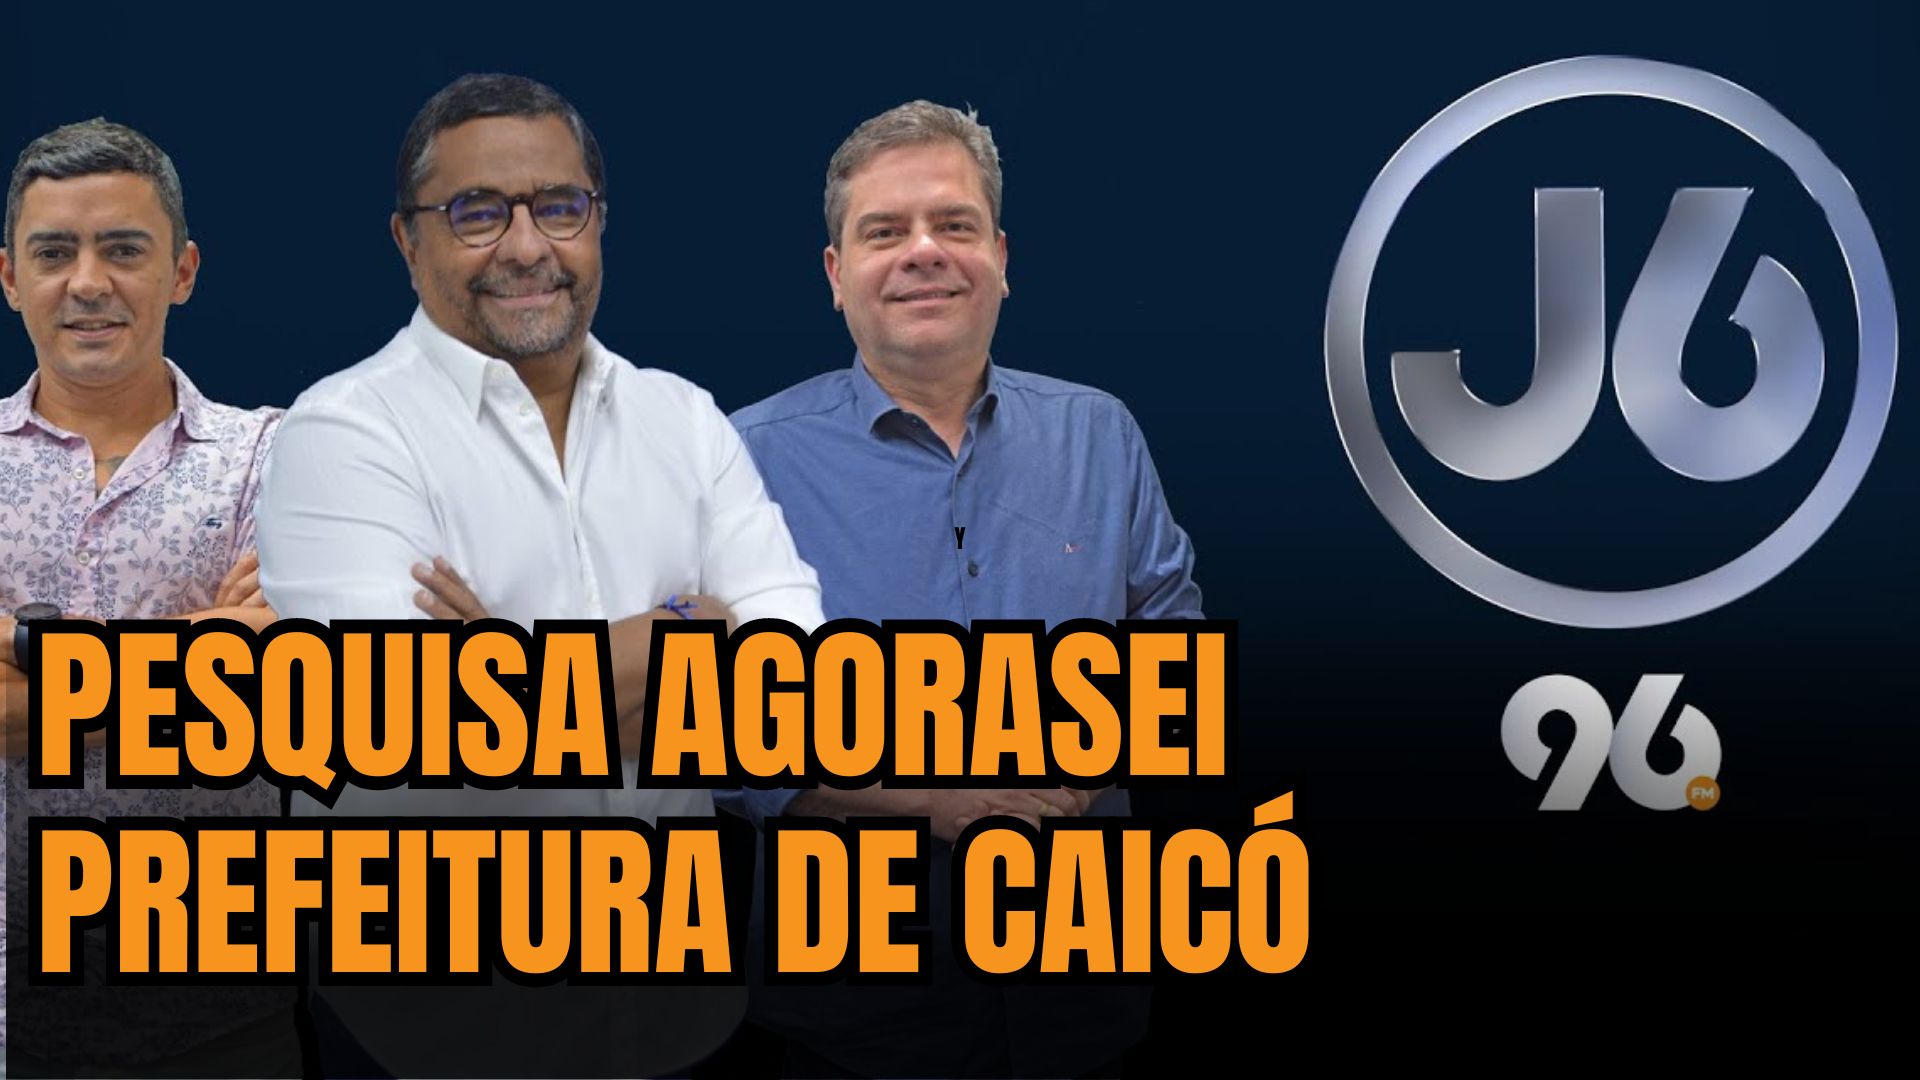 Caicó: 96 FM divulga hoje pesquisa exclusiva para prefeito 